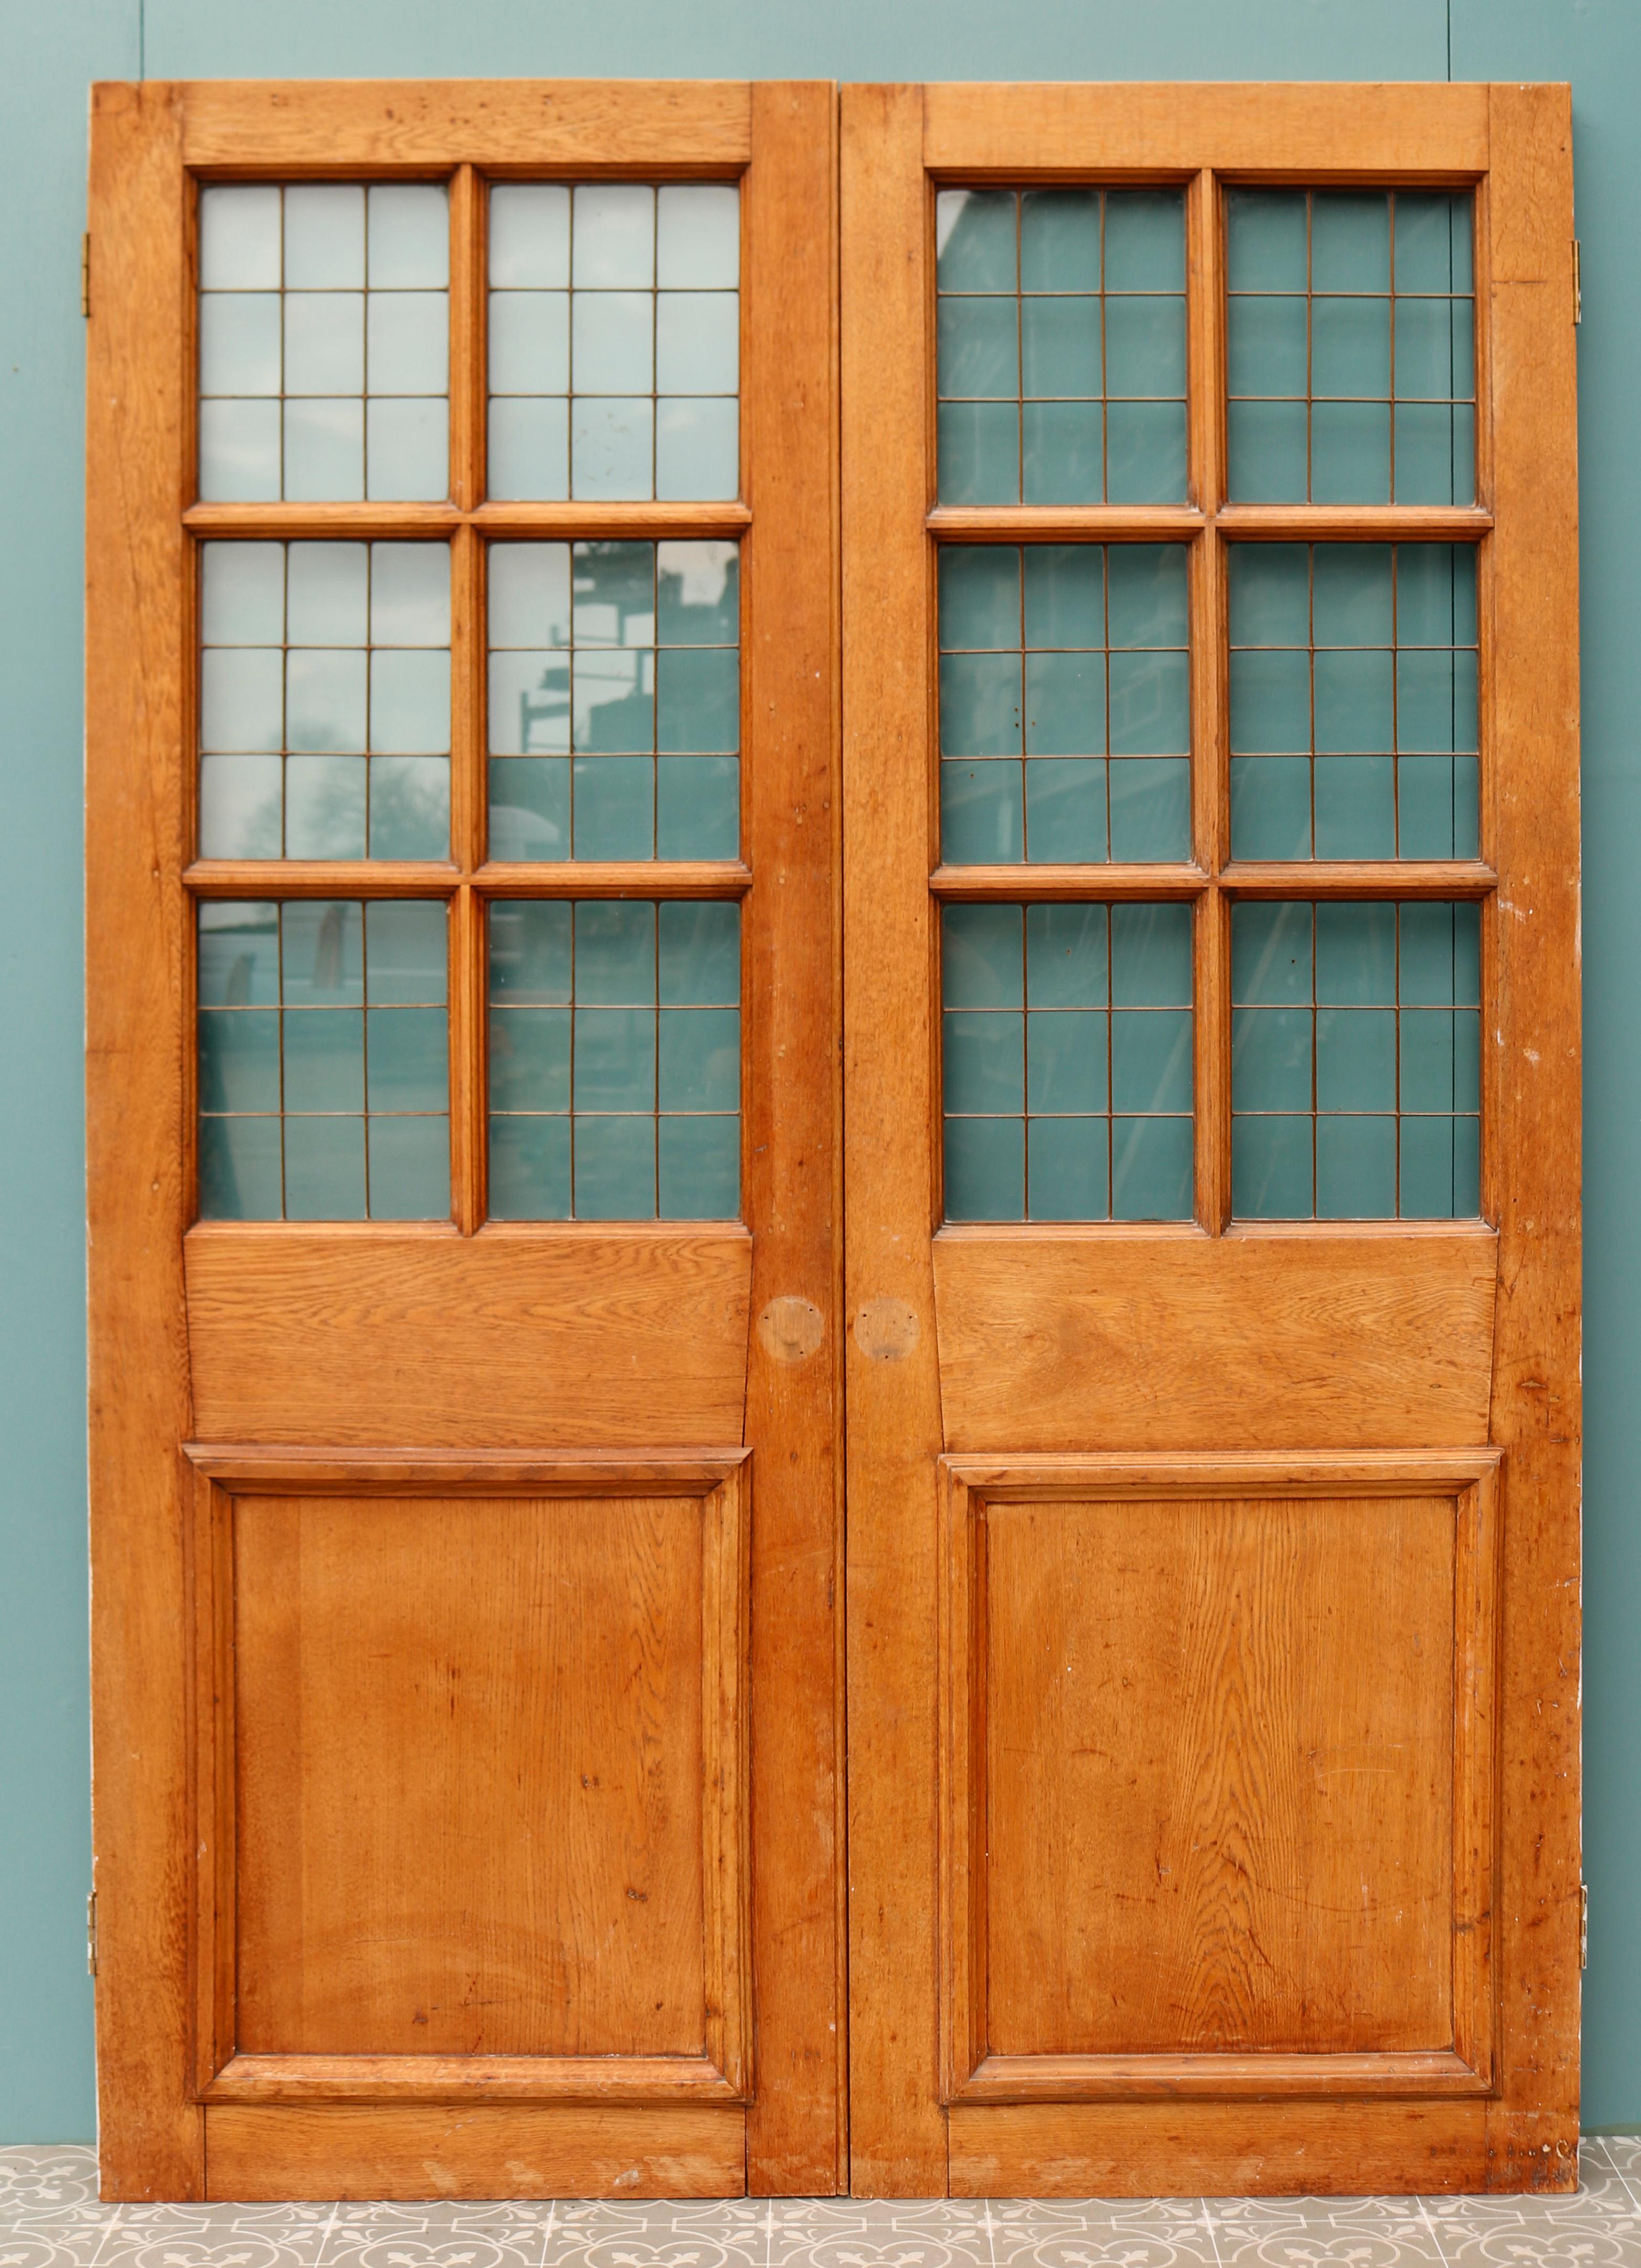 Un ensemble attrayant de doubles portes légères en cuivre récupéré dans le style Art déco.

Dimensions supplémentaires

La largeur indiquée concerne les deux portes.